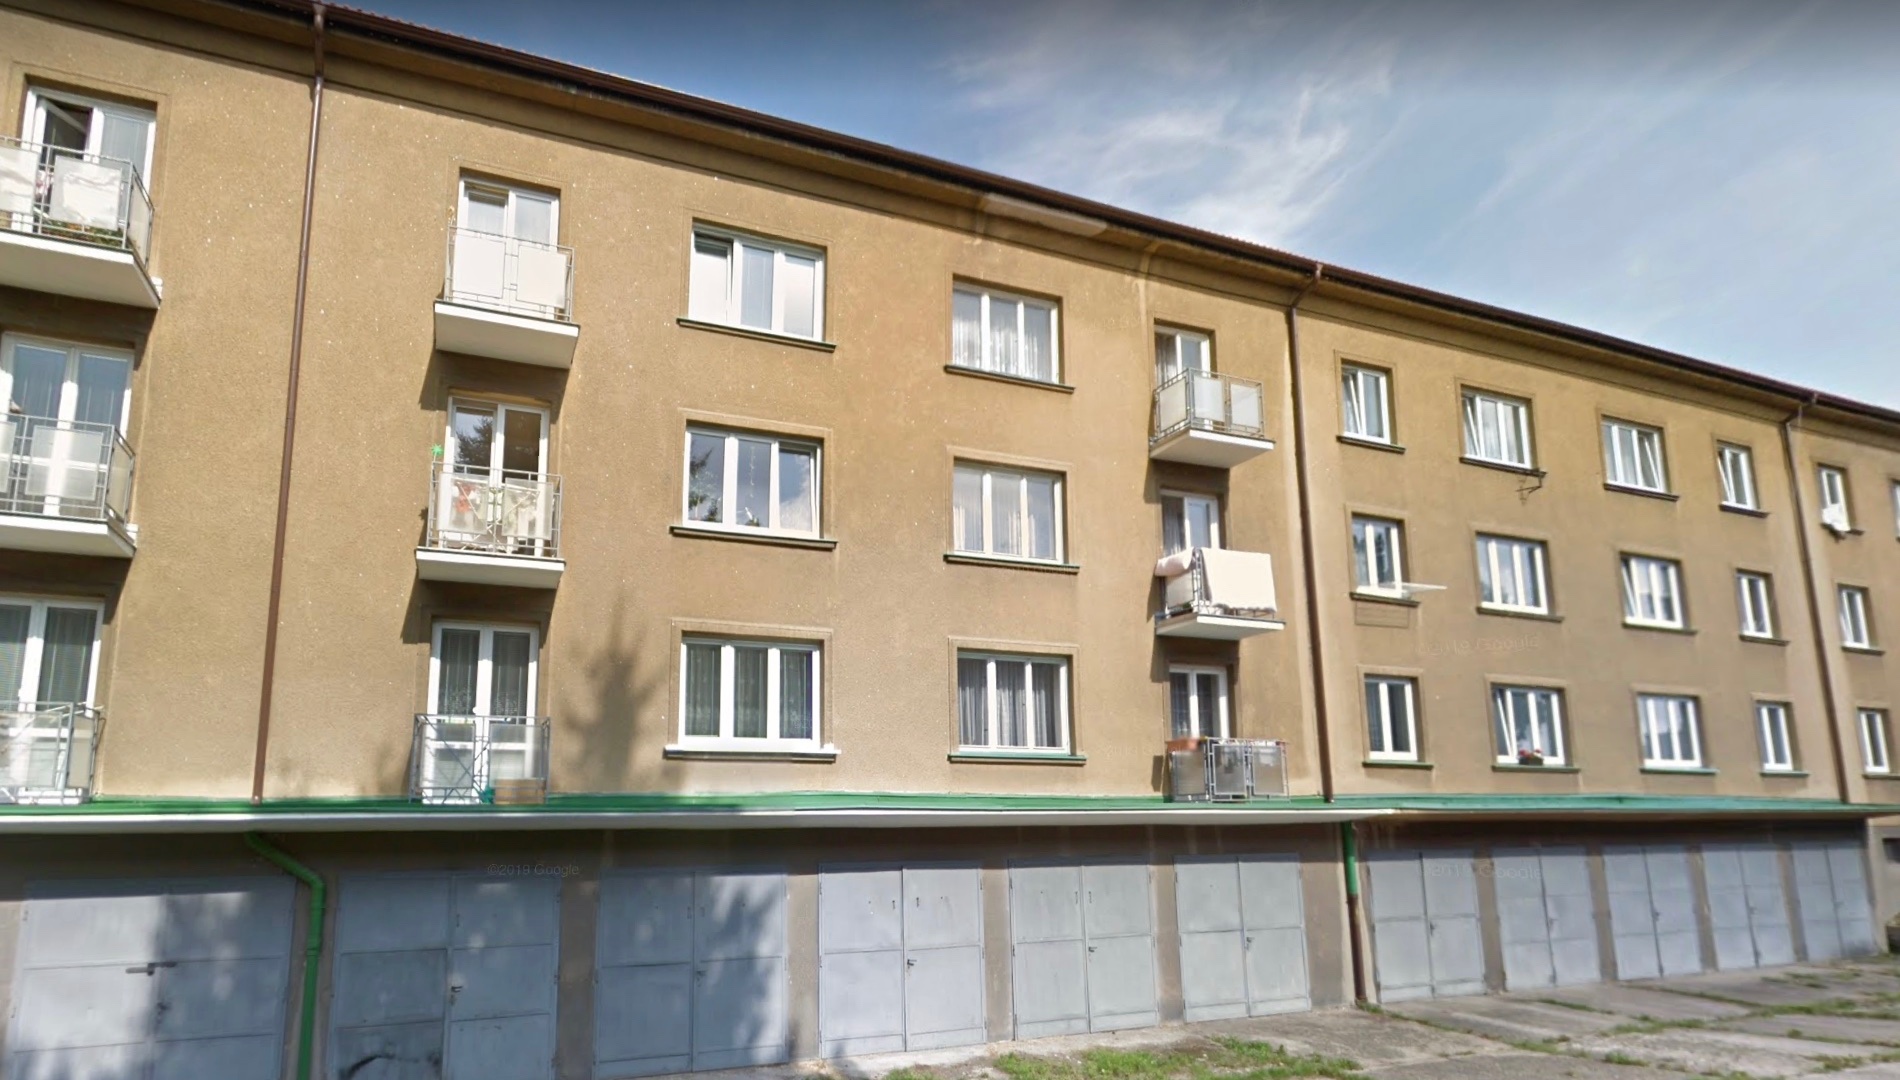 Prodej byt 3+1 před rekonstrukcí ve zrekonstruovaném bytovém domě, 68 m² - Kolín II